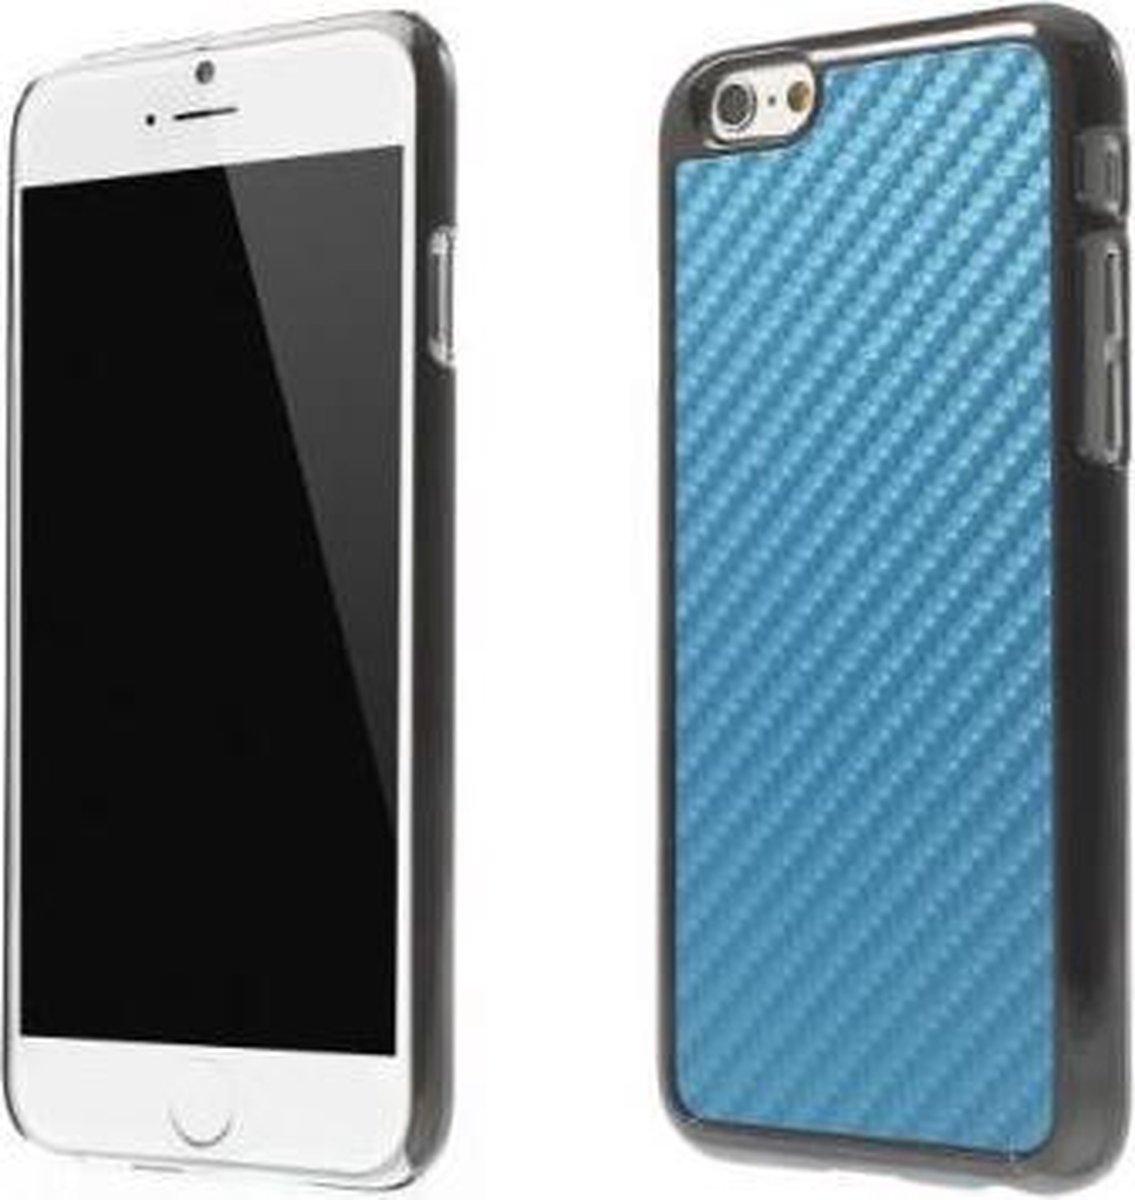 MW Hard Case met PU Lederen Coating Plated Carbon Fibre Blauw voor Apple iPhone 6/6S